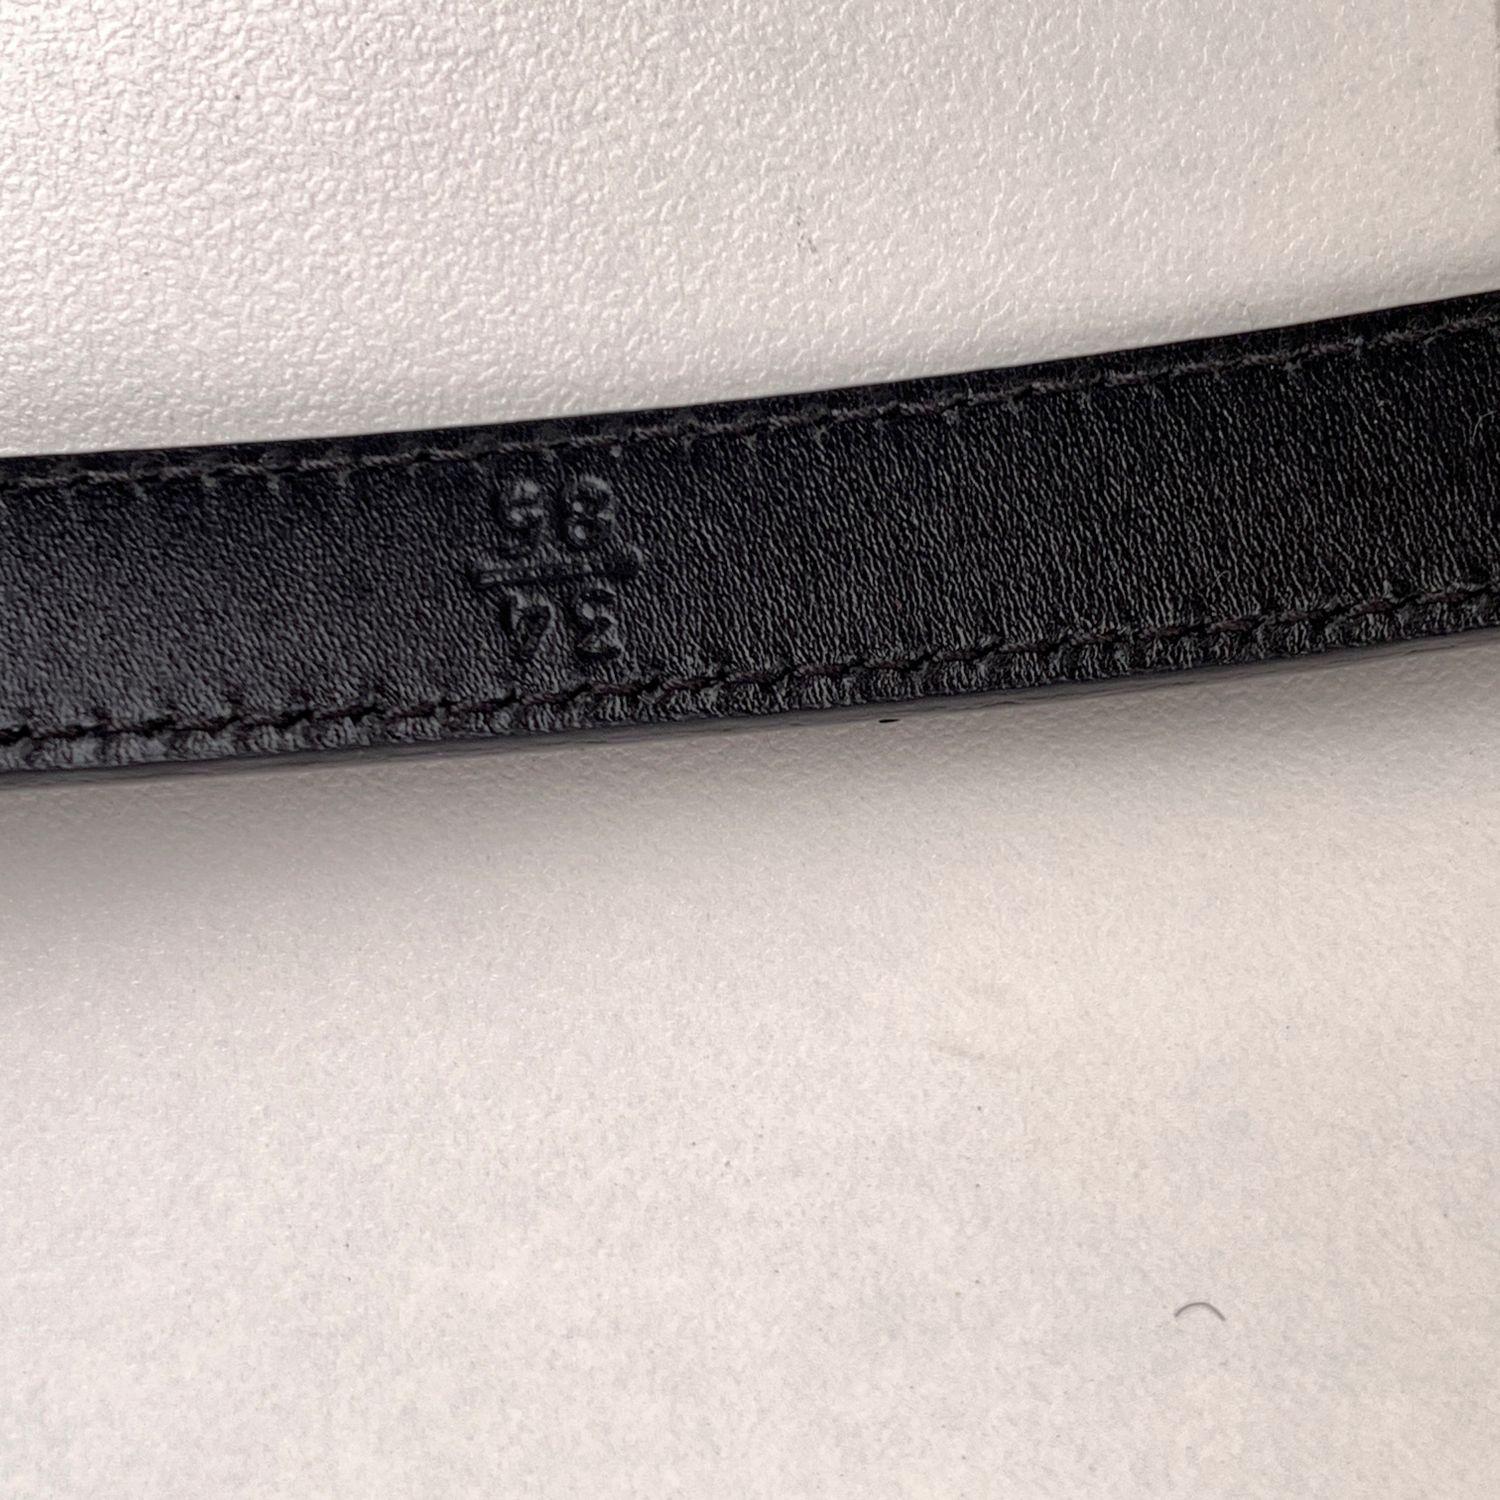 Prada Black Saffiano Leather Bow Skinny Belt Size 85/34 1